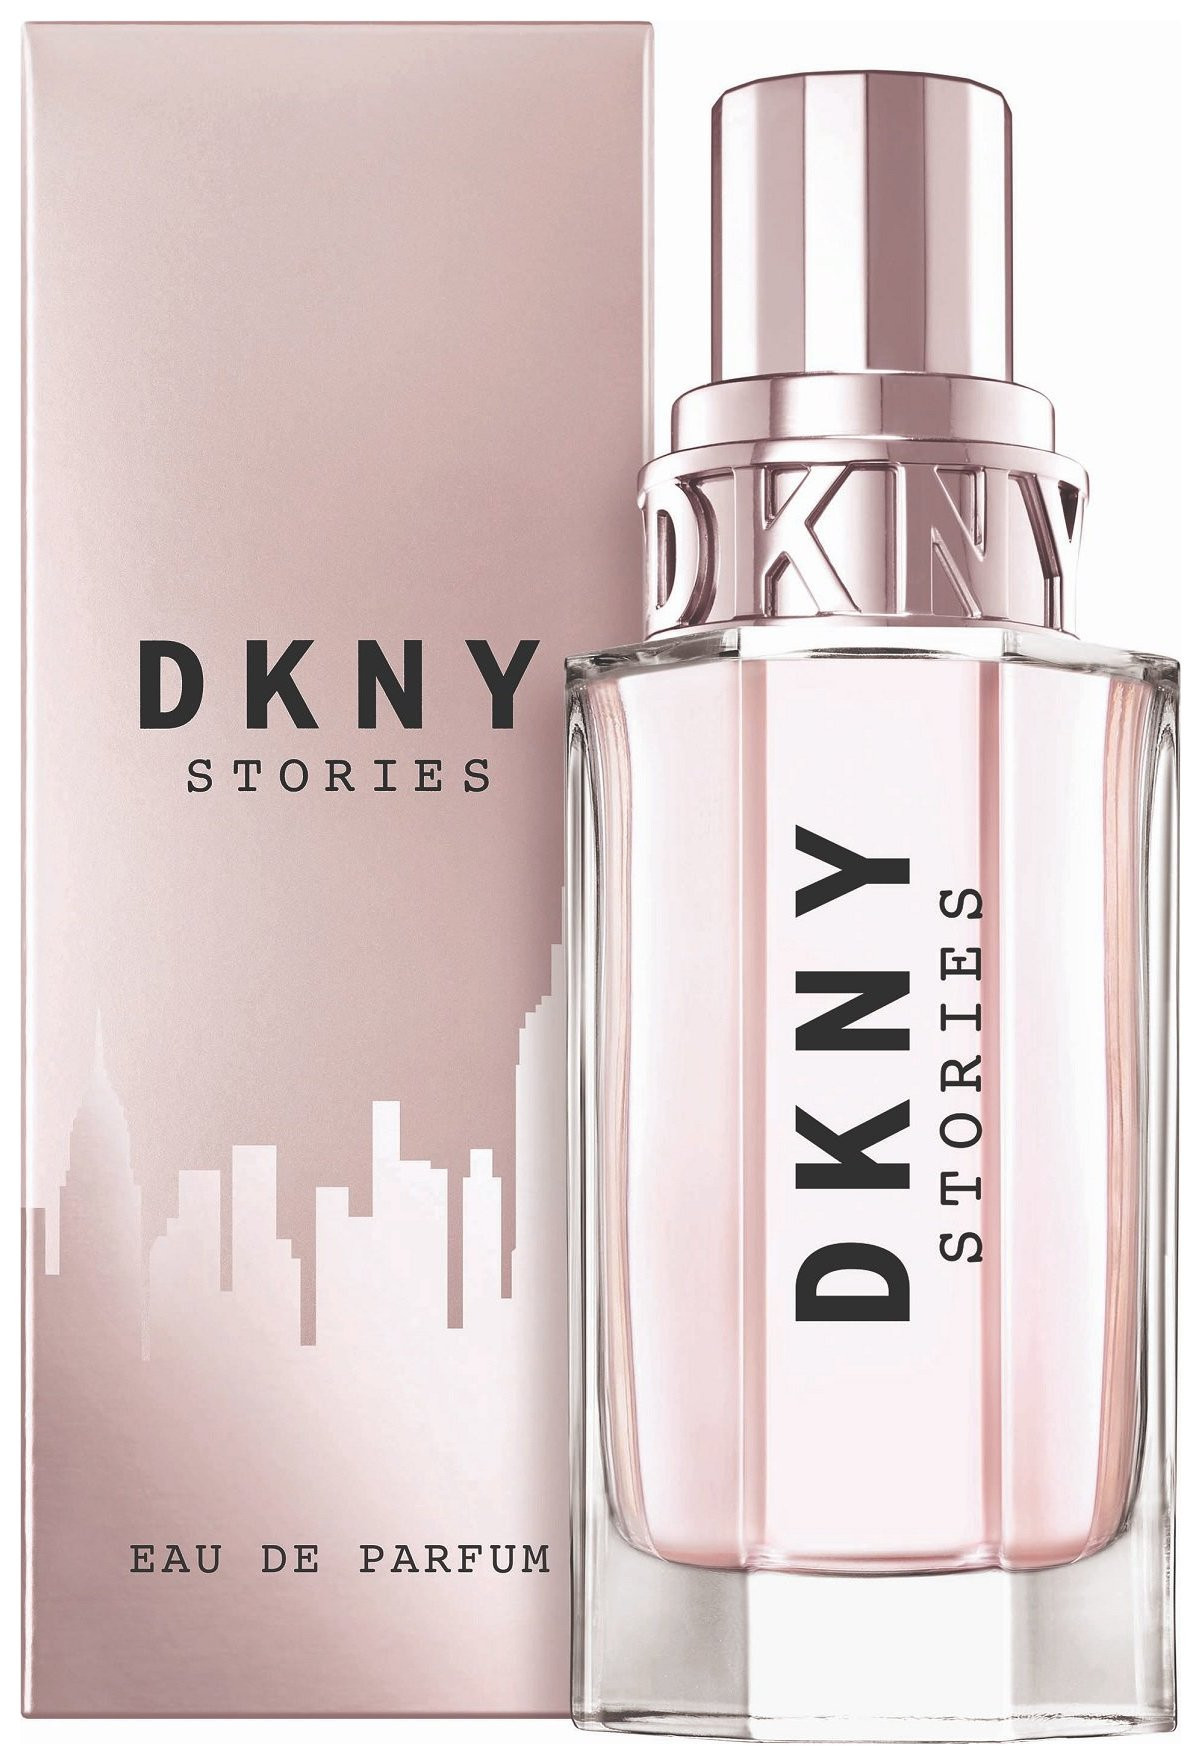 Парфюмерная вода "Stories" DKNY